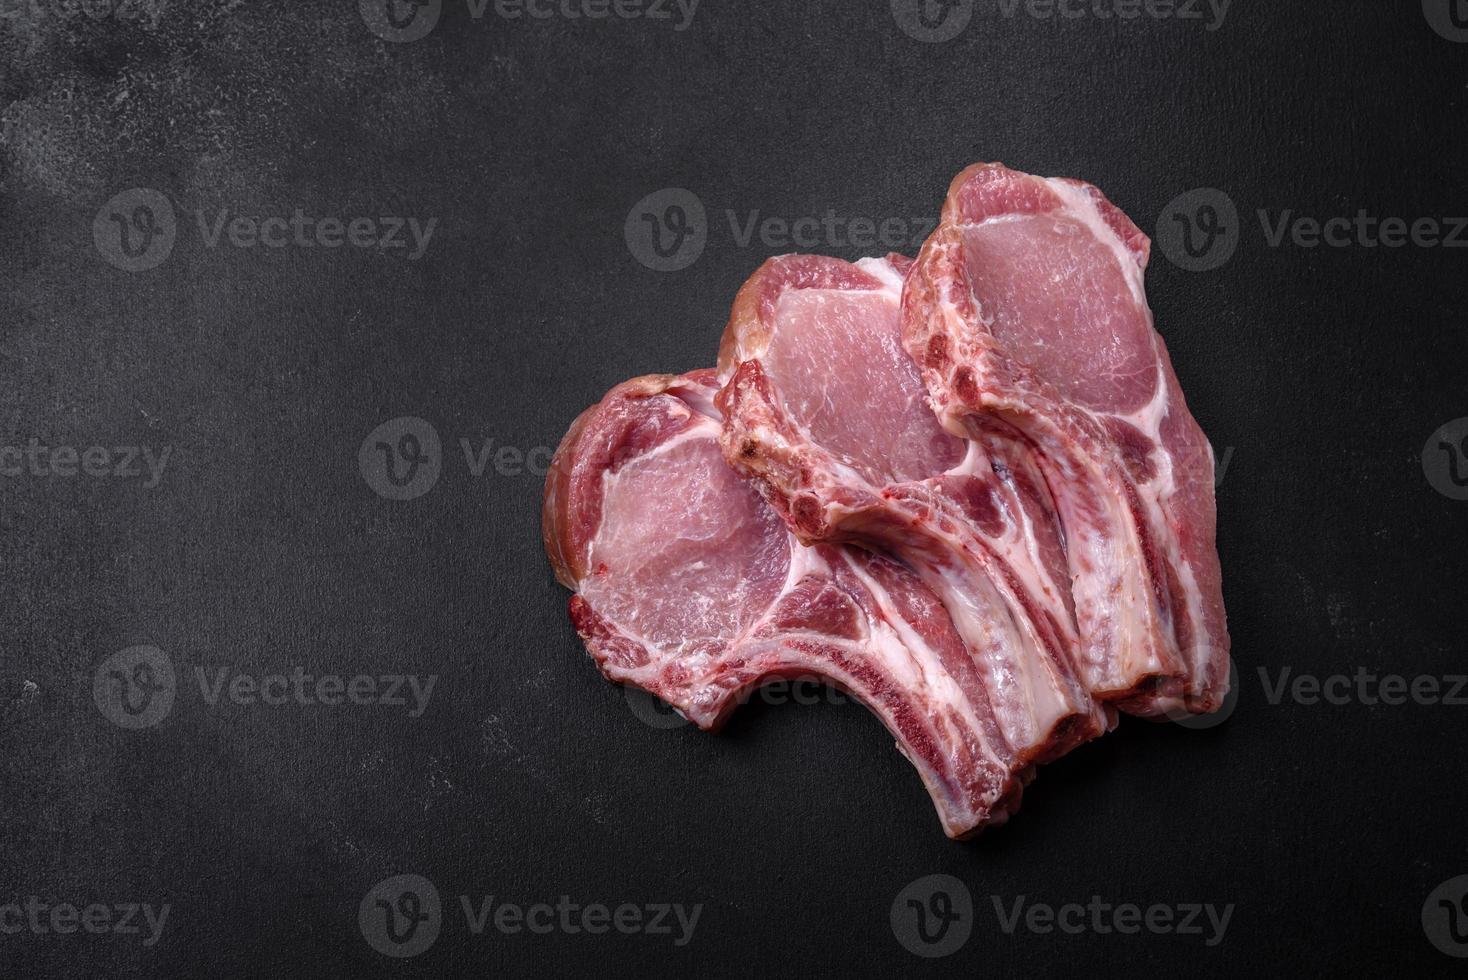 carne de cerdo cruda fresca en las costillas con especias y hierbas en una tabla de cortar de madera foto